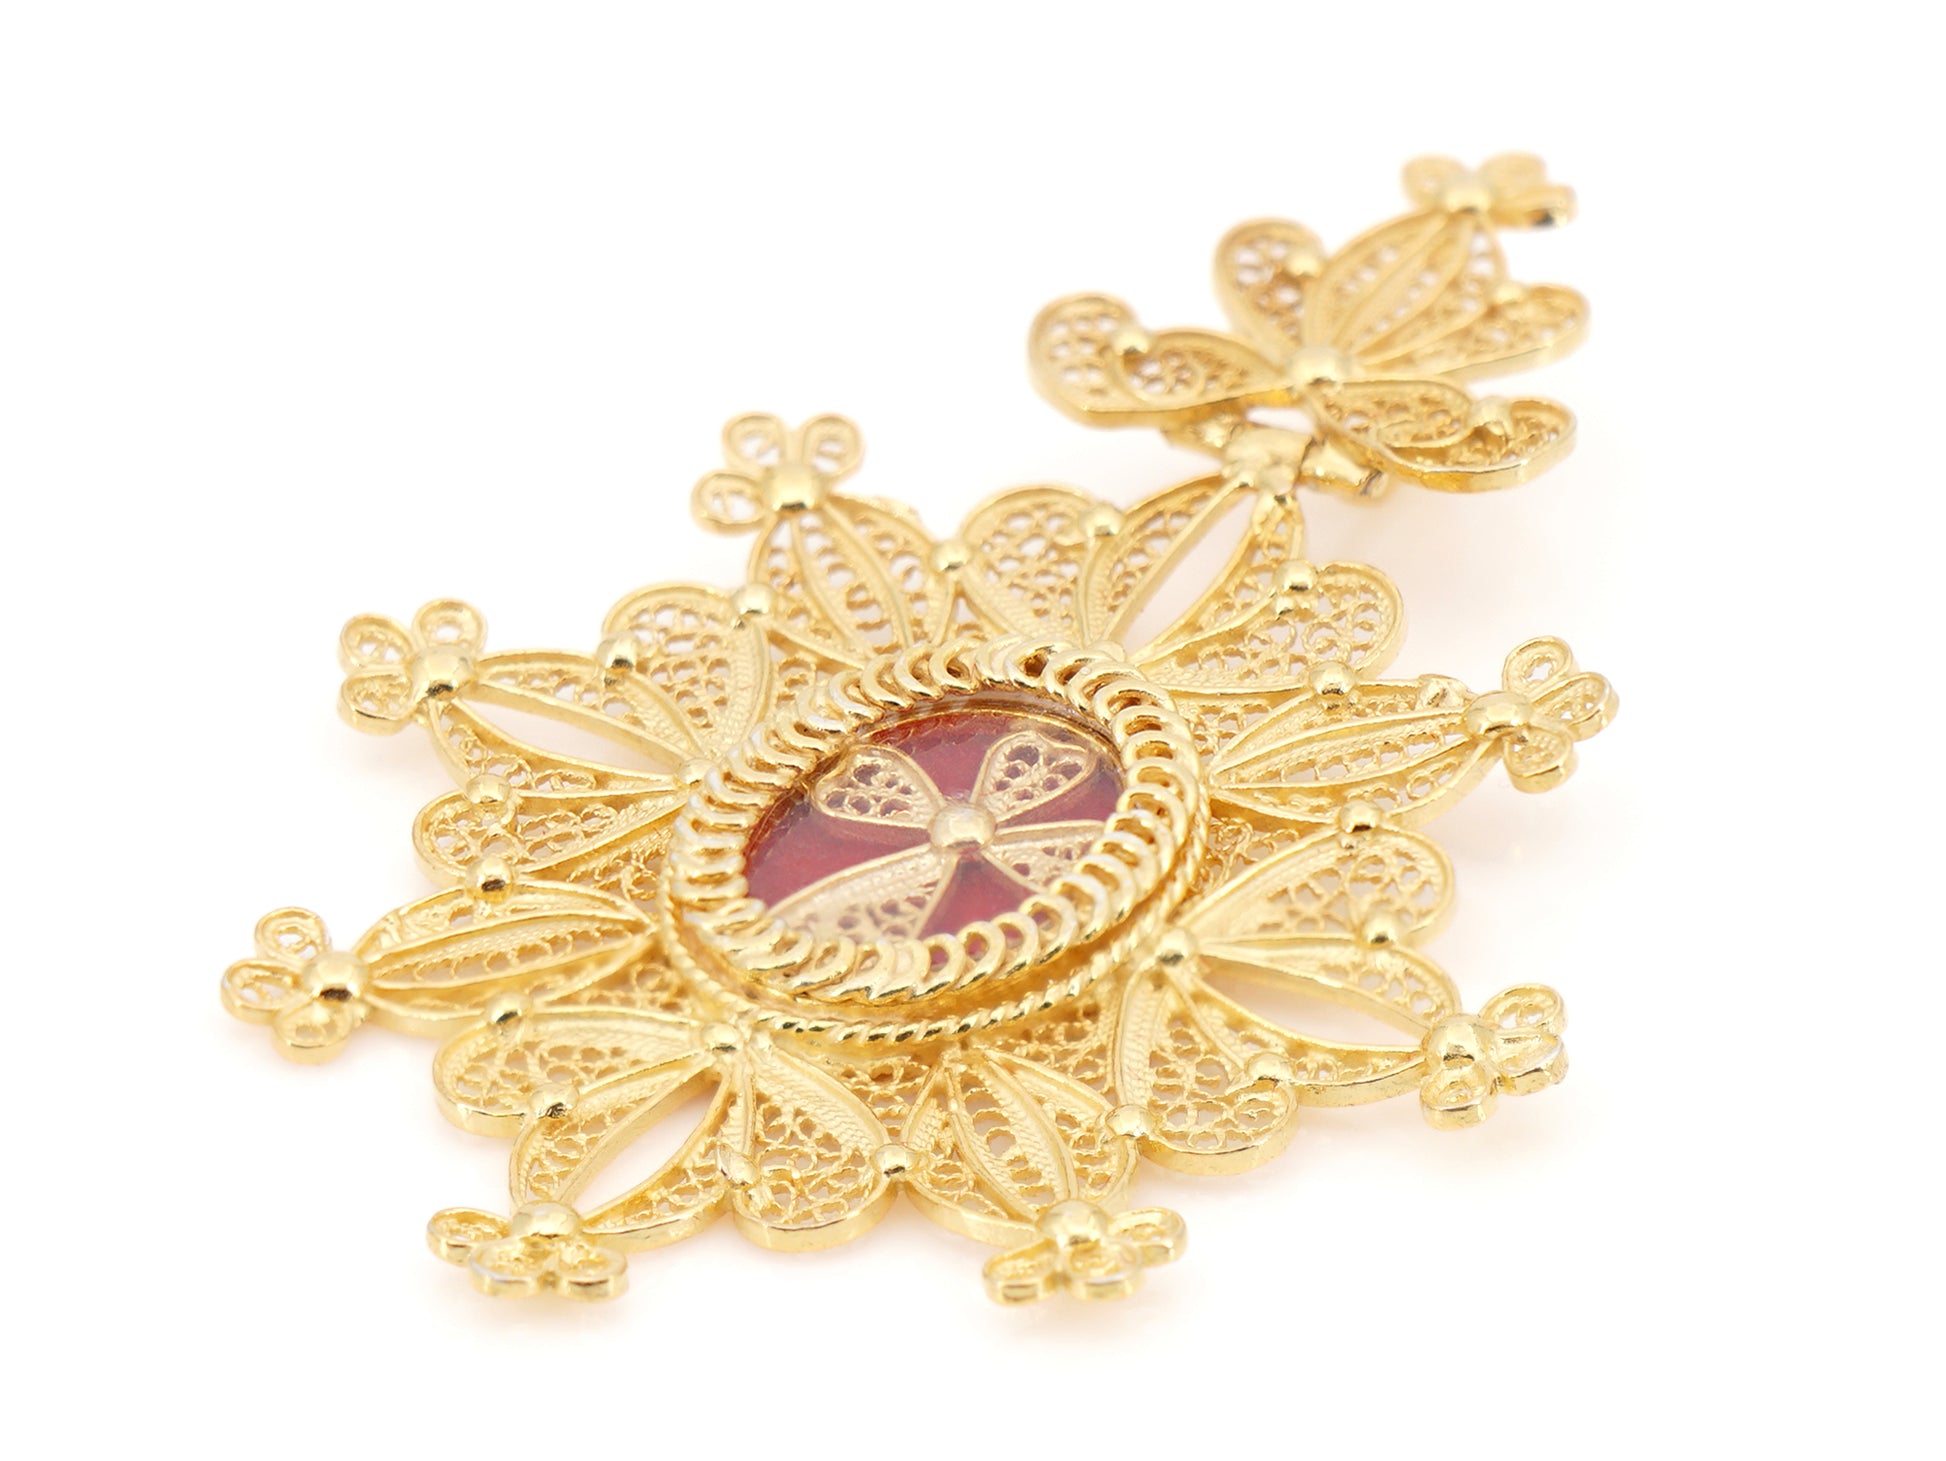 Medalha Relicário / Custódia Oval, Filigrana Portuguesa, Prata de Lei 925 Dourada - Pormenor